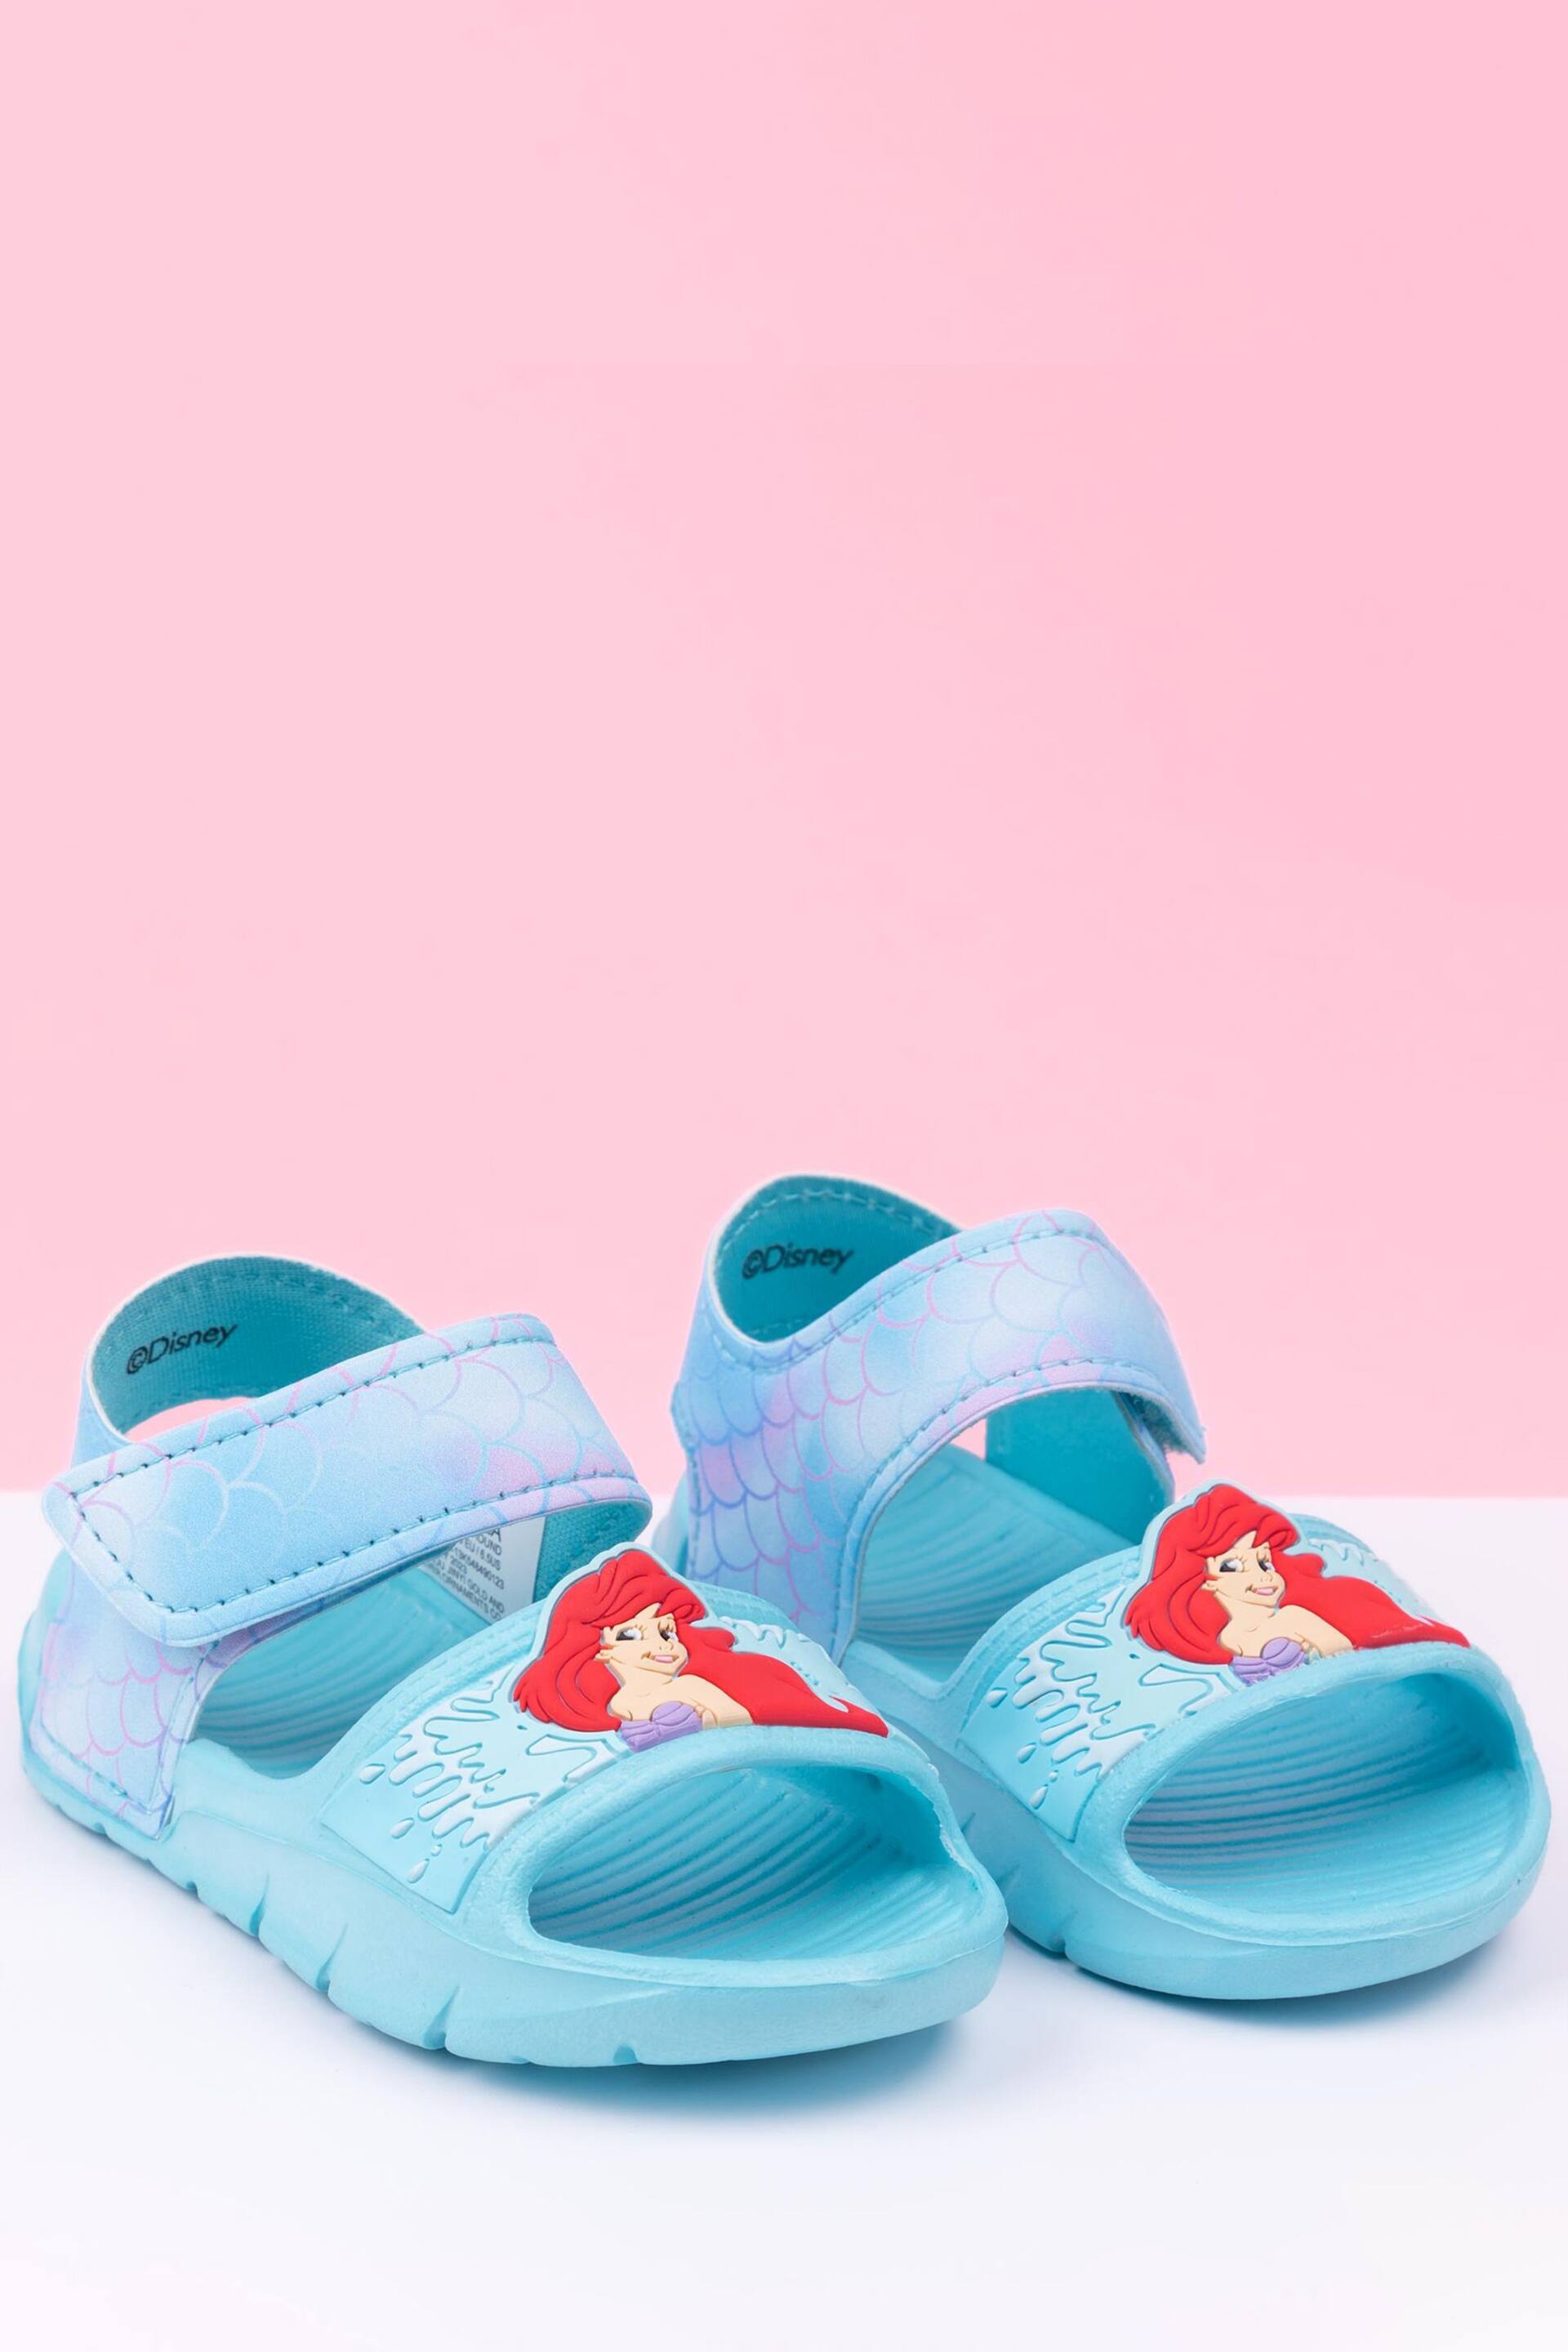 Vanilla Underground Blue Girls Little Mermaid Disney Sandals - Image 2 of 5